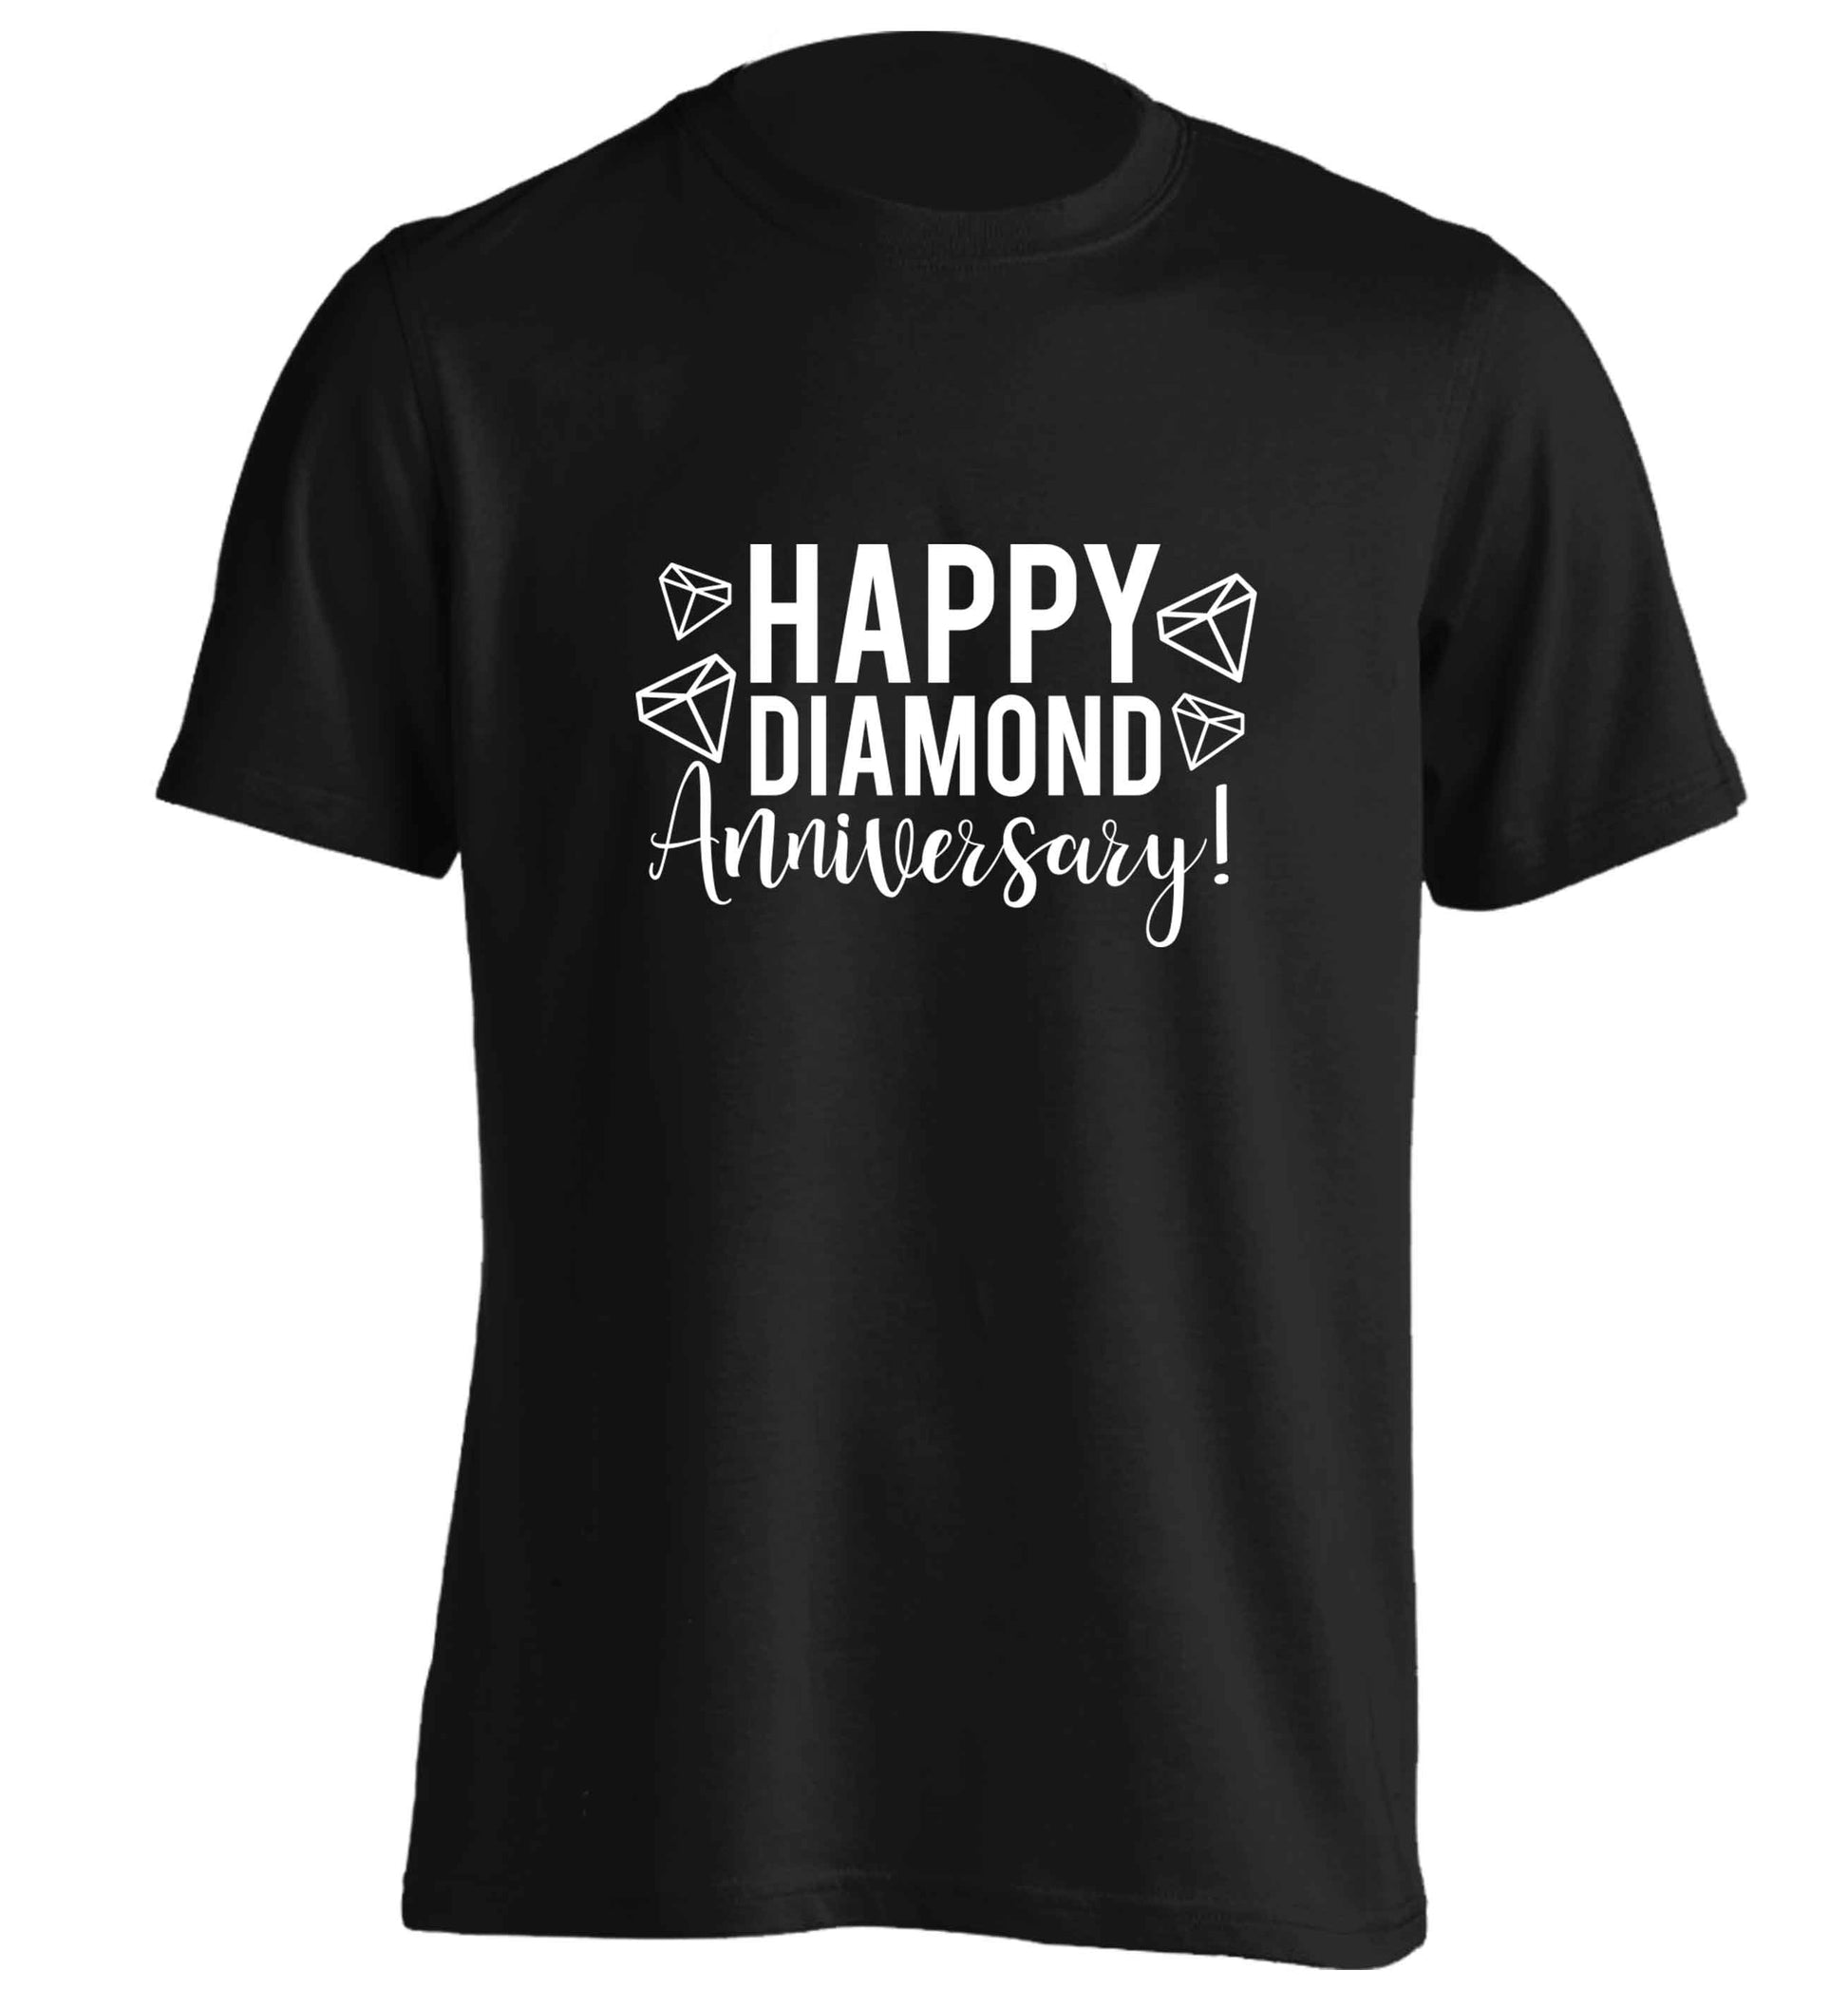 Happy diamond anniversary! adults unisex black Tshirt 2XL